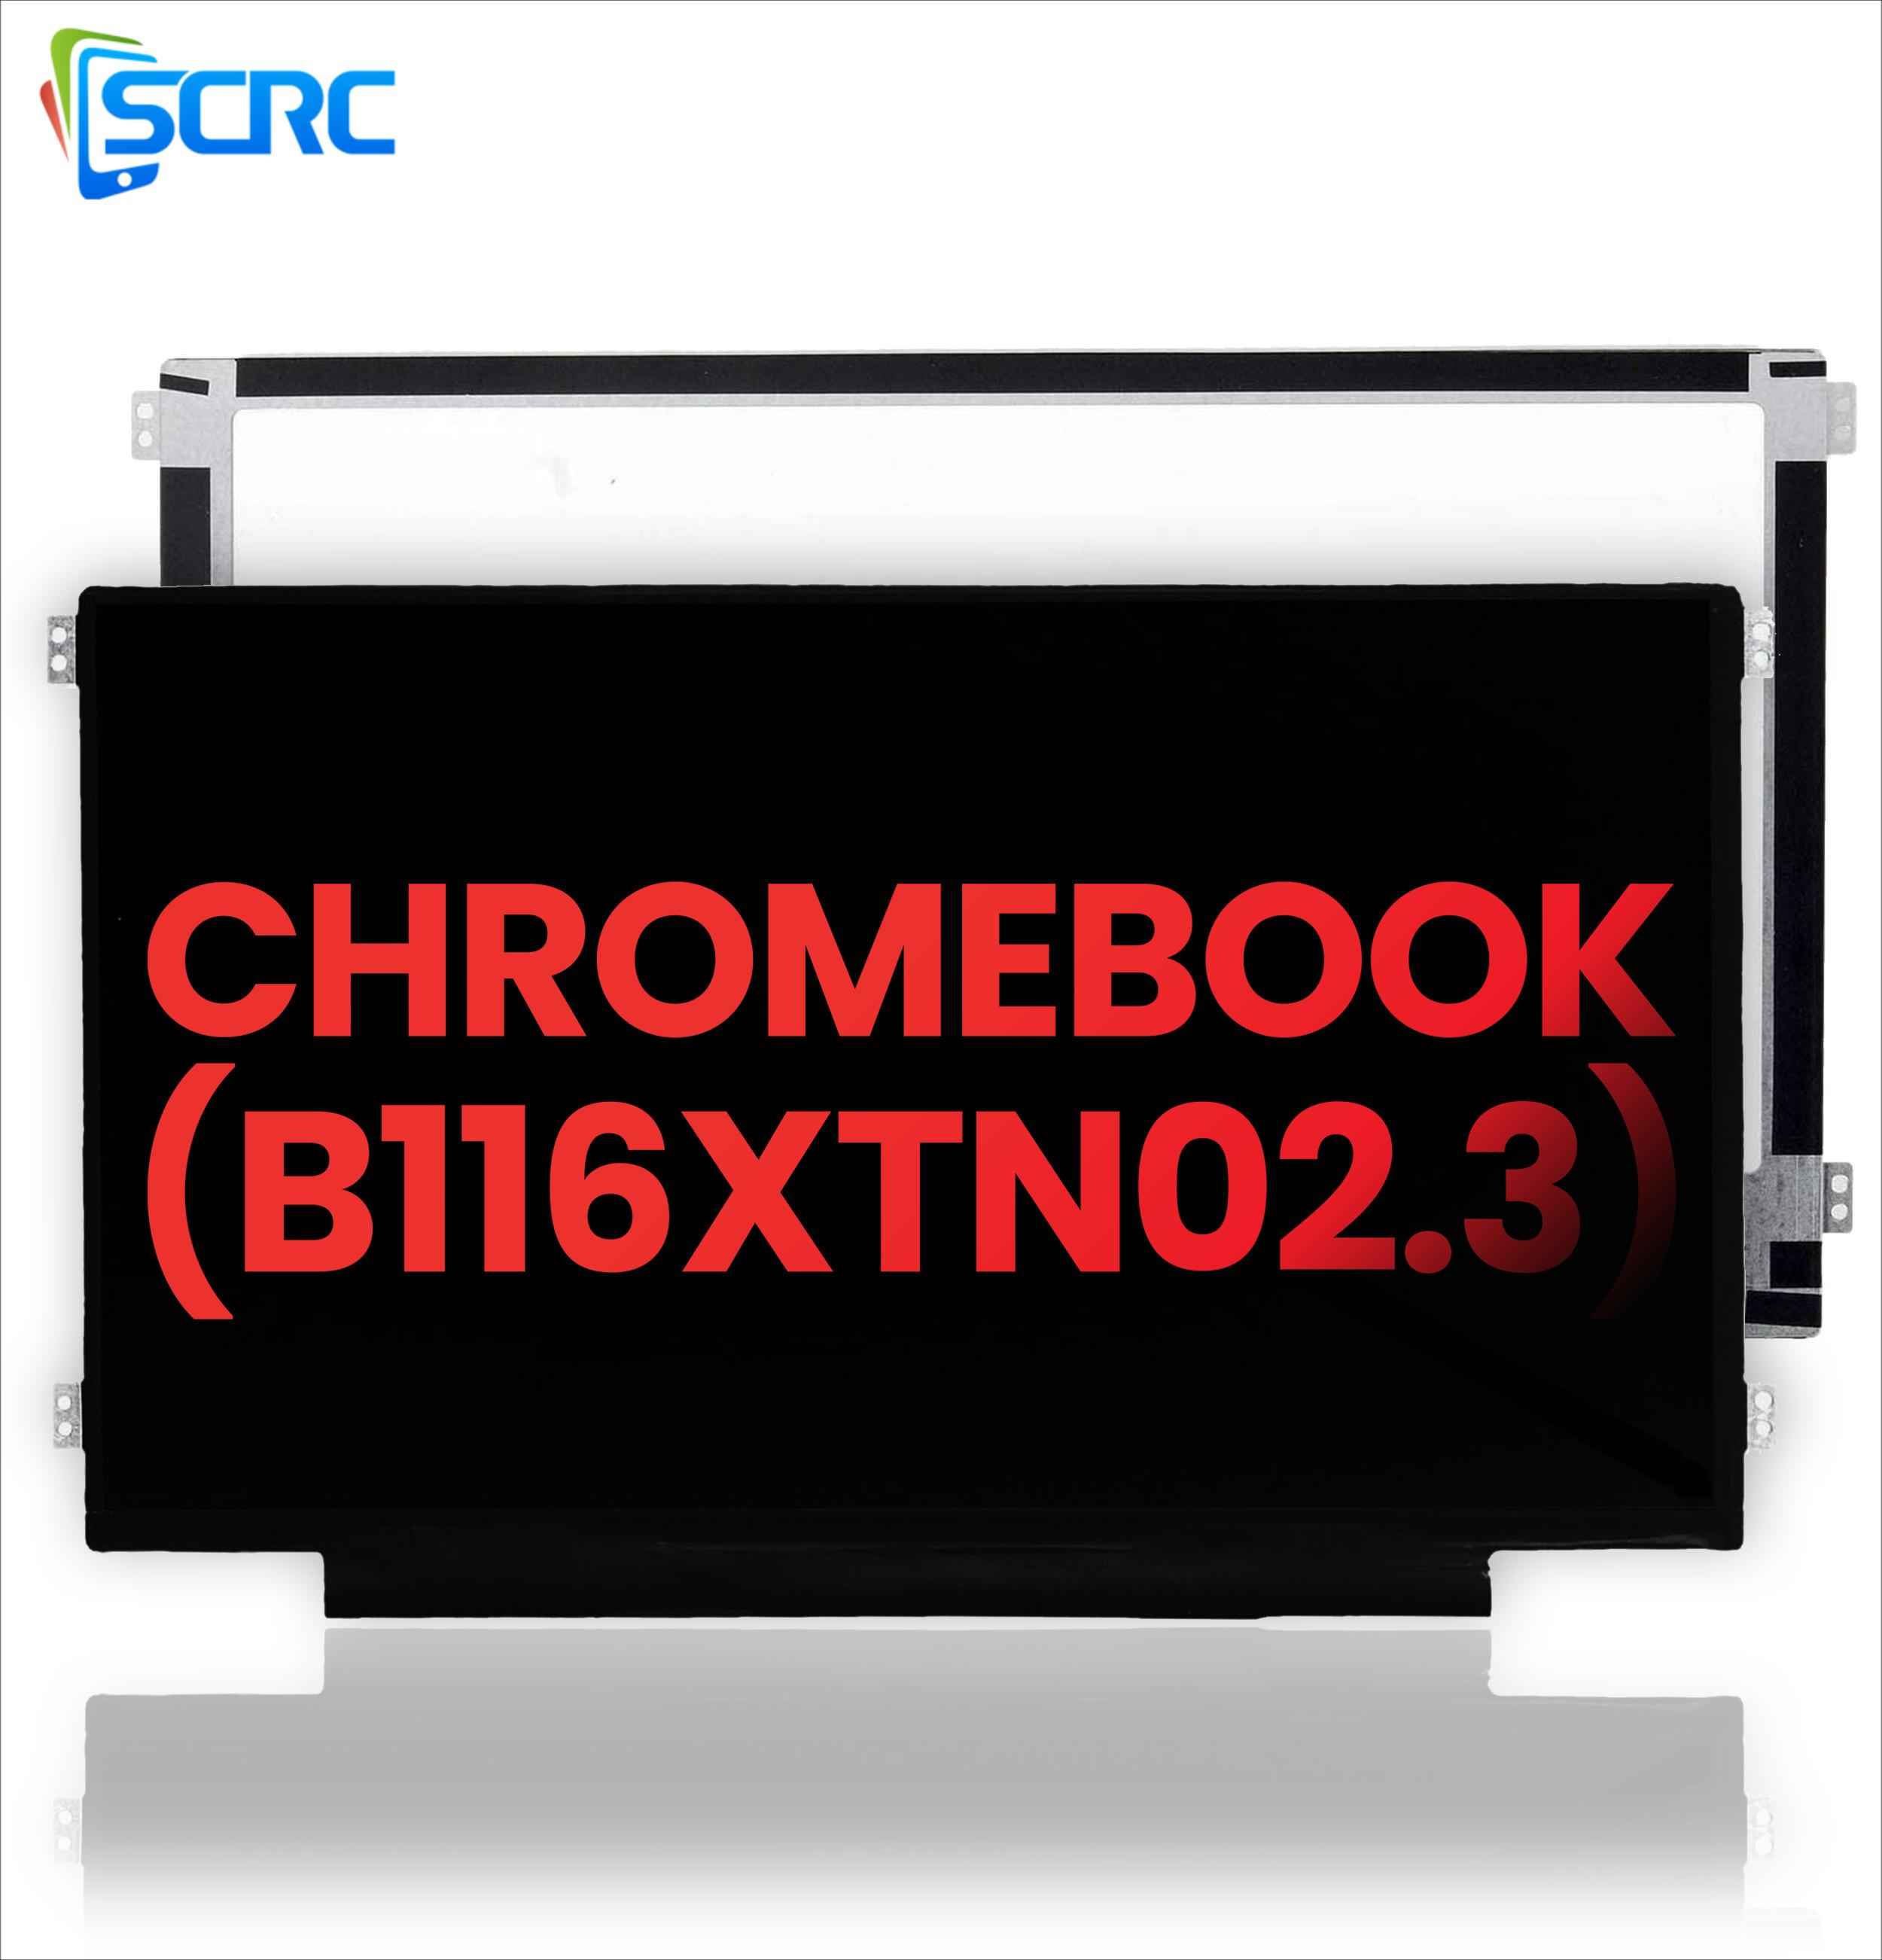 DELL Chromebook B116XTN02.3 এর জন্য LCD স্ক্রিন প্রতিস্থাপন